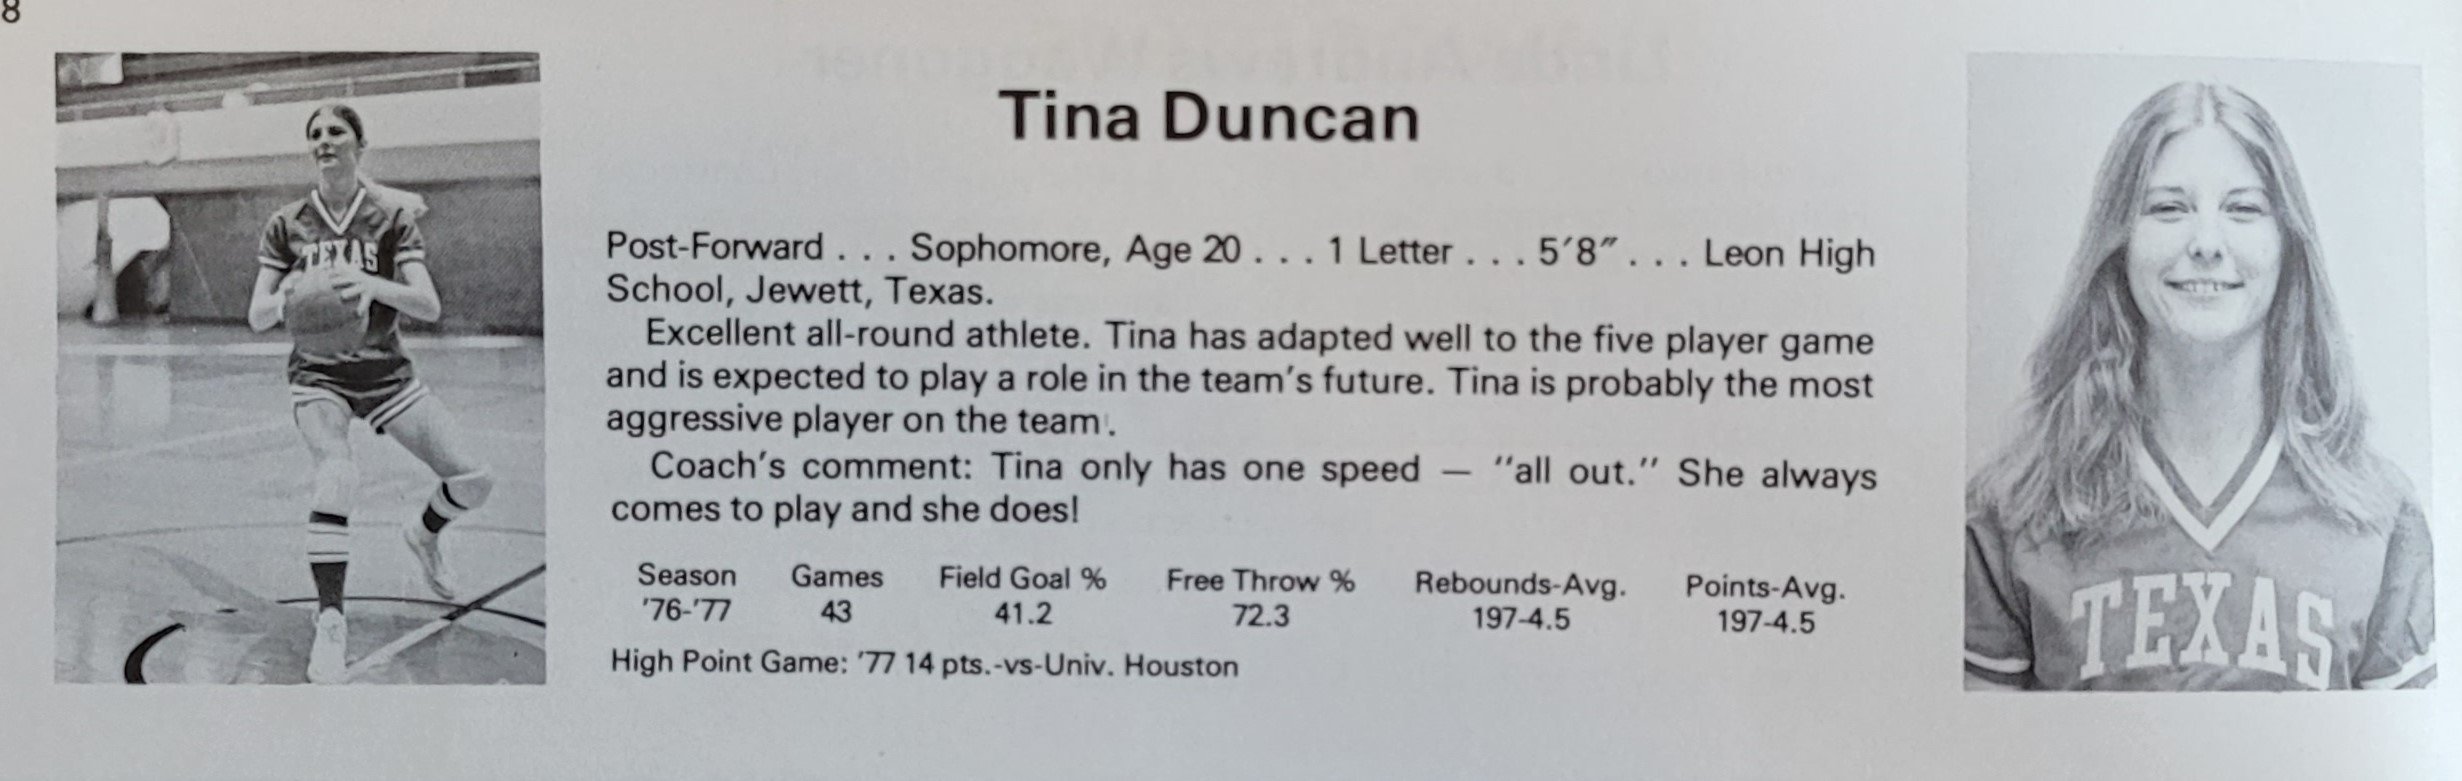 Tina Duncan 